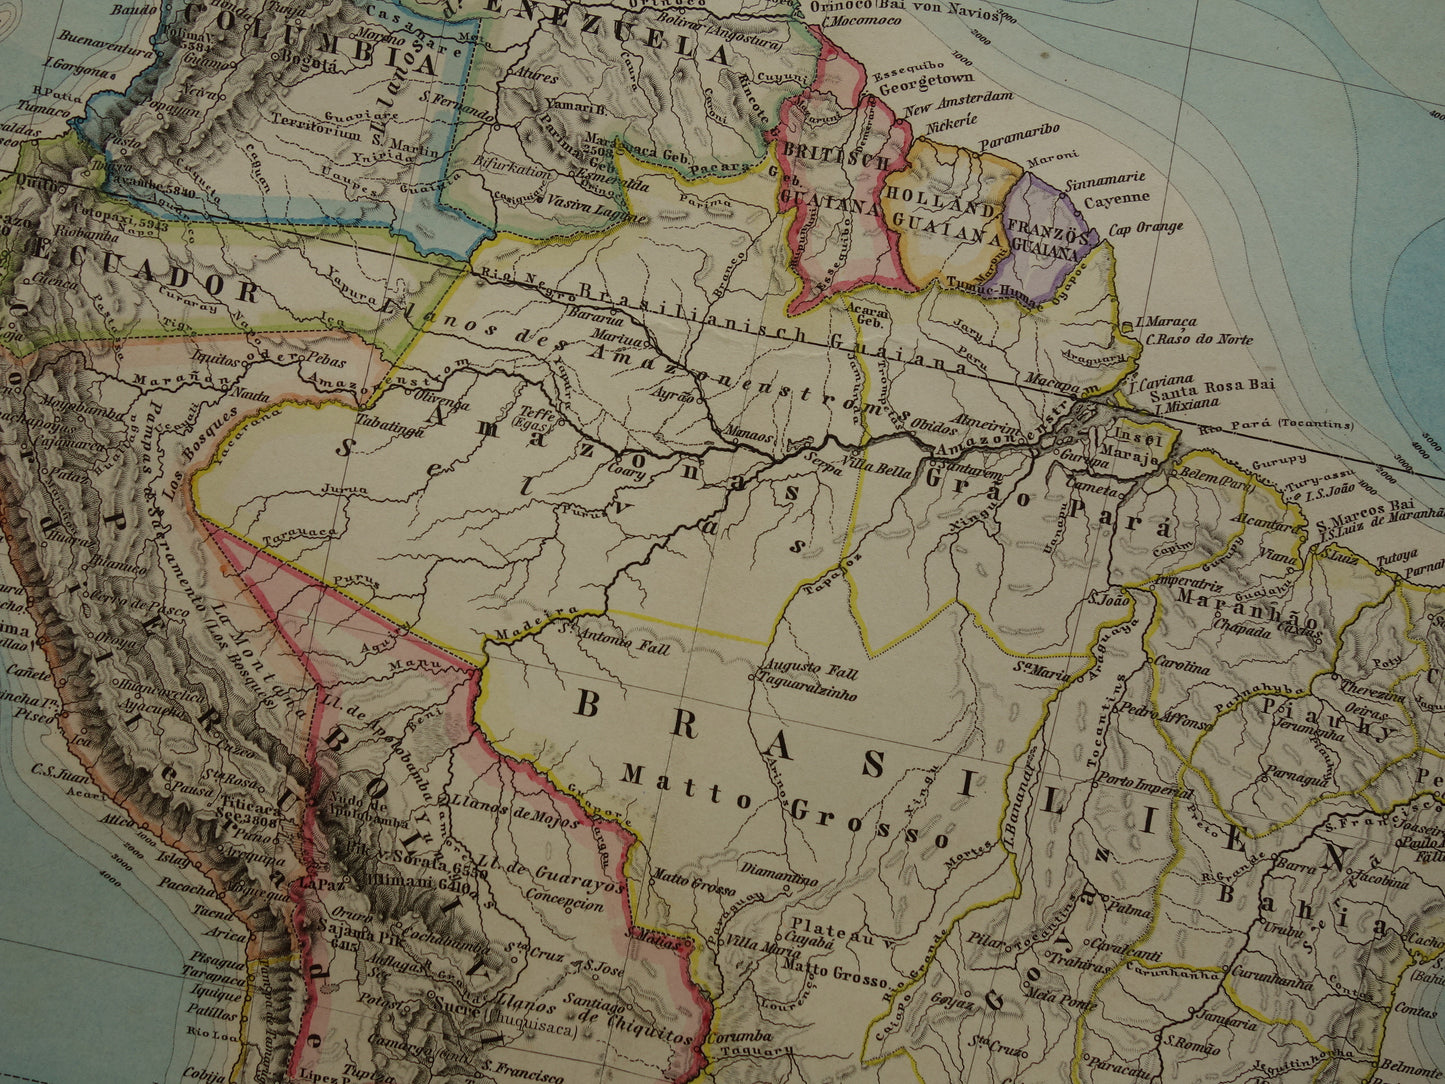 ZUID-AMERIKA vintage landkaart uit 1885 van continent Originele oude antieke kaart met jaartal - historische kaarten van Zuid-Amerika